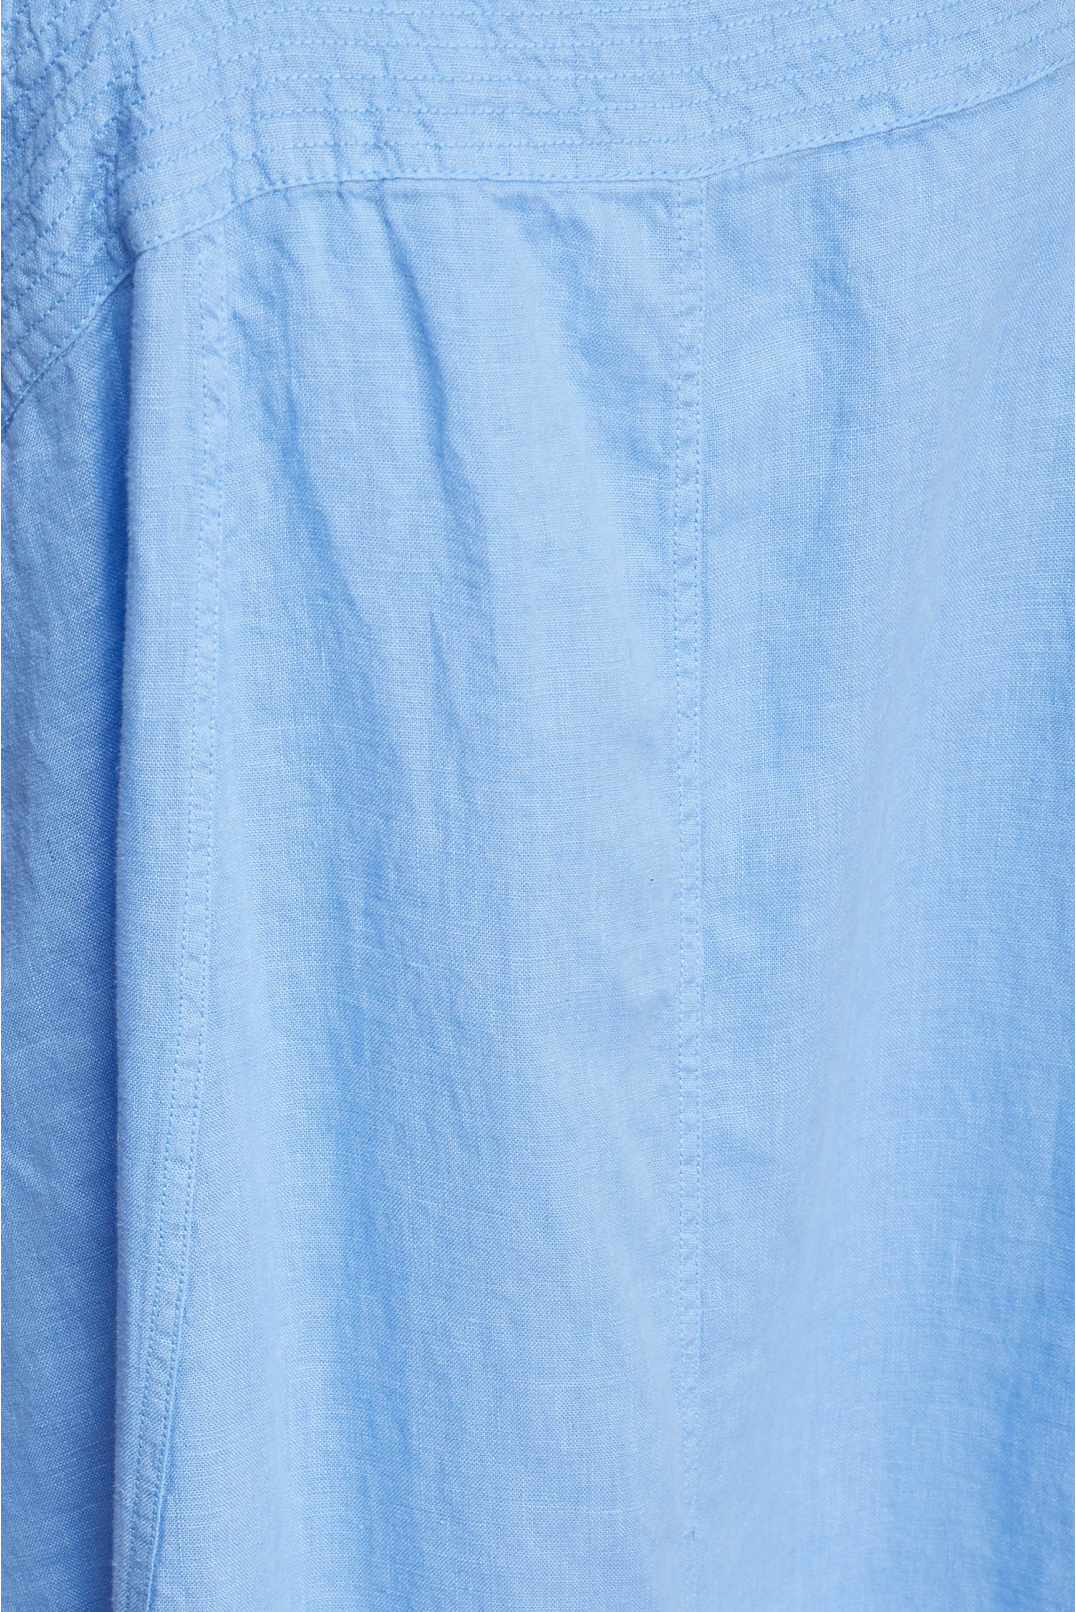 Жіночий блакитний лляний сарафан - 3